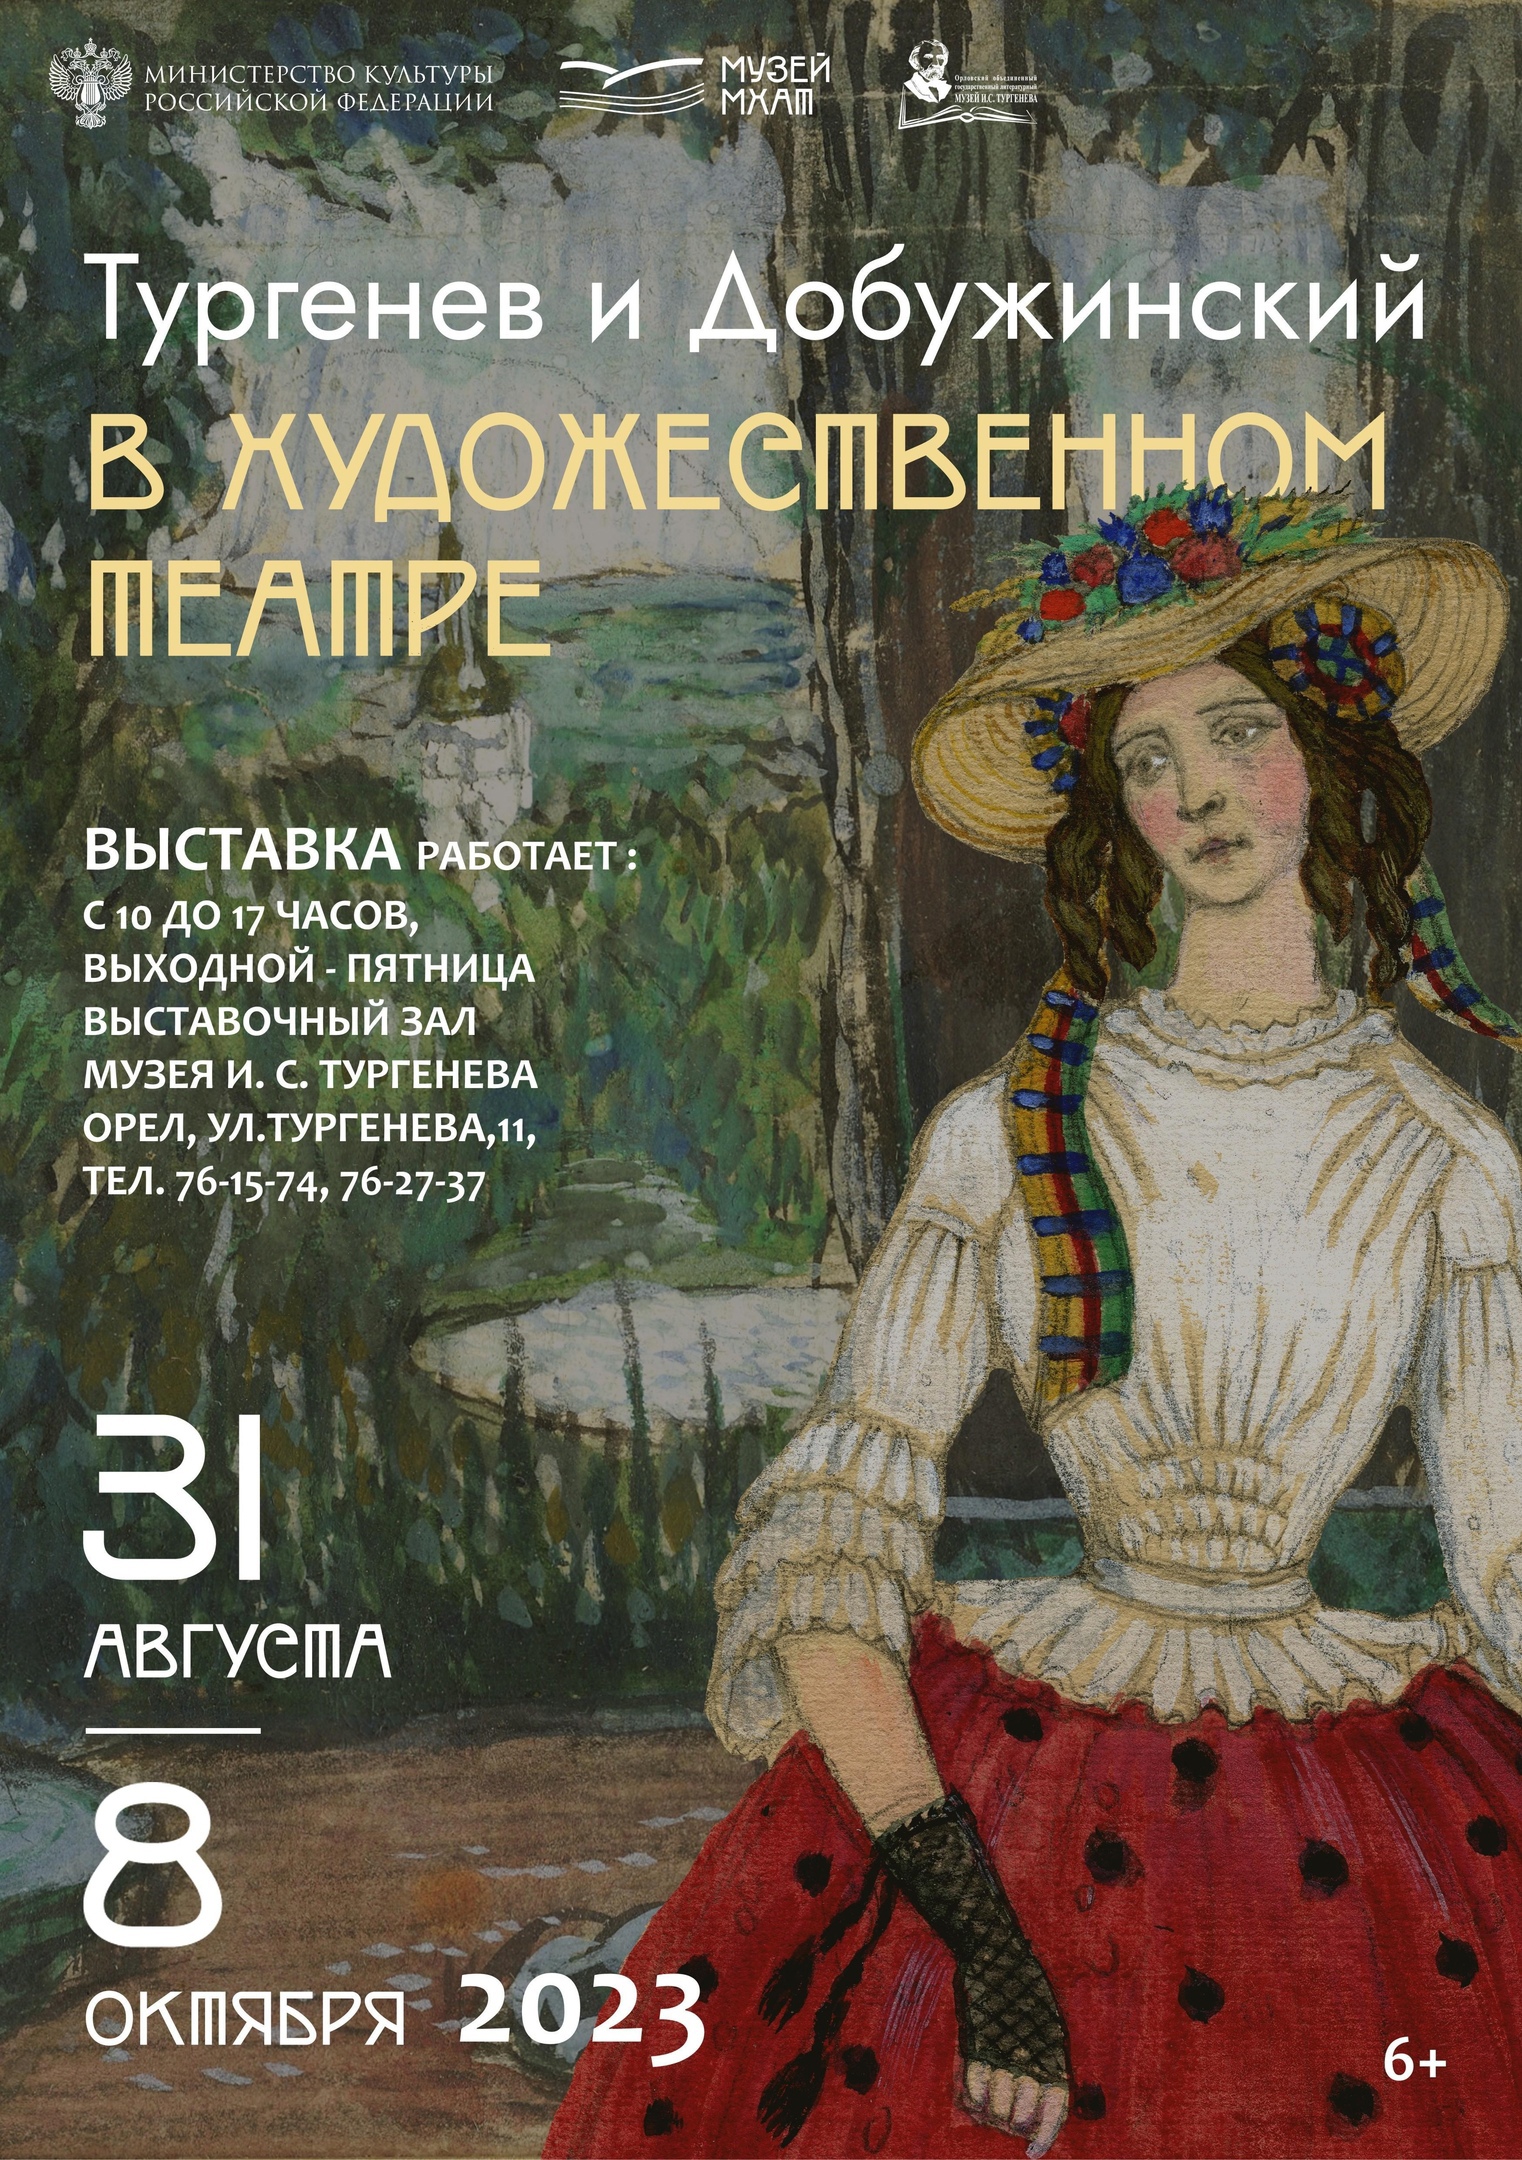 Выставка «Тургенев и Добужинский в Художественном театре»